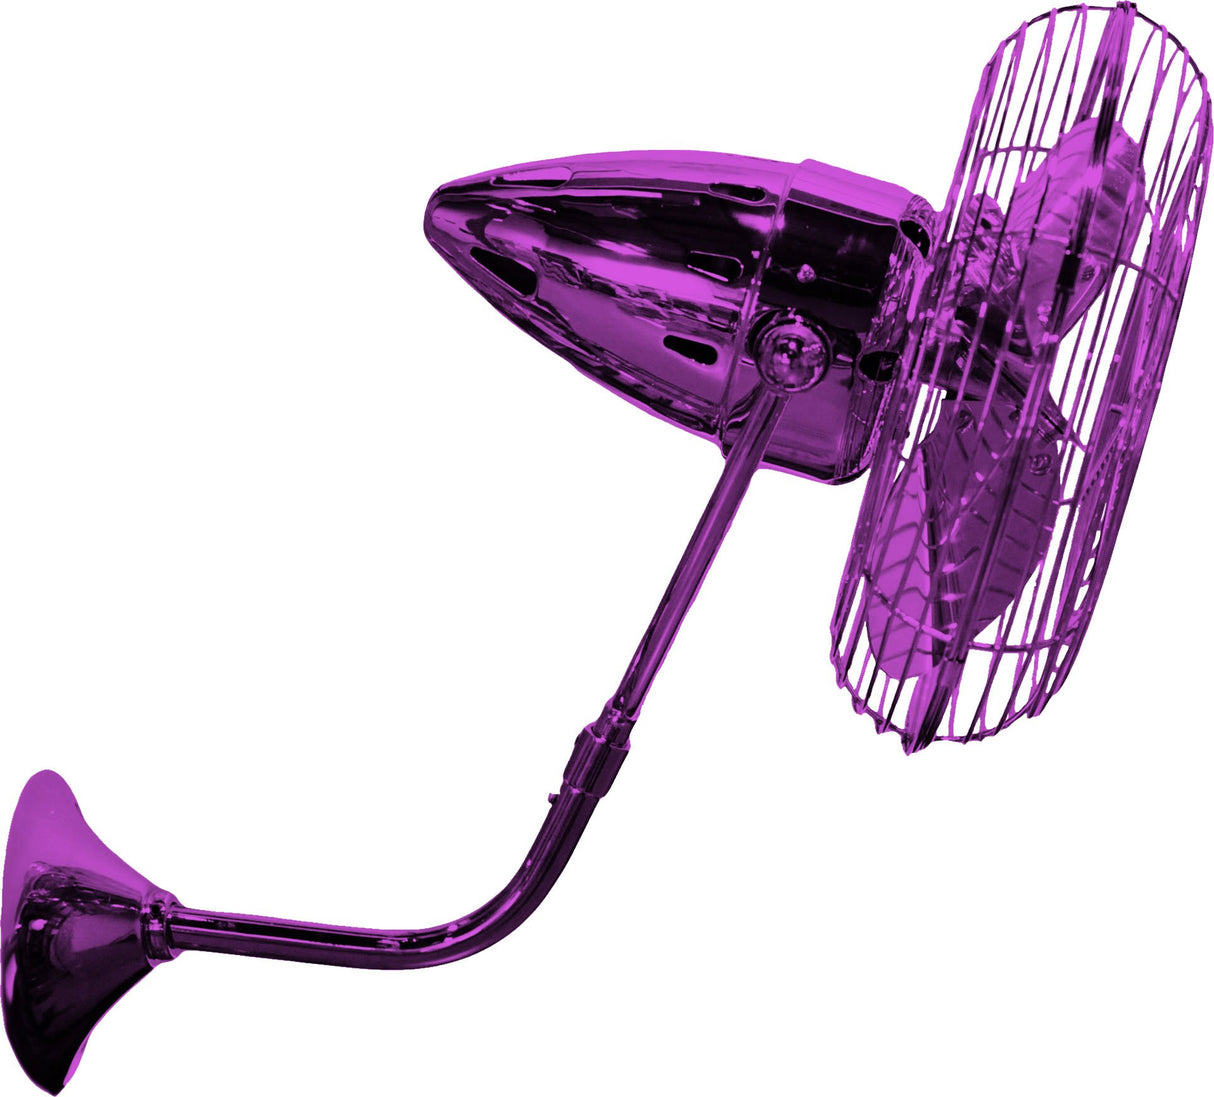 Matthews Fan AR-LTPURPLE-MTL Ar Ruthiane 360° dual headed rotational ceiling fan in Ametista (Purple) finish with metal blades.